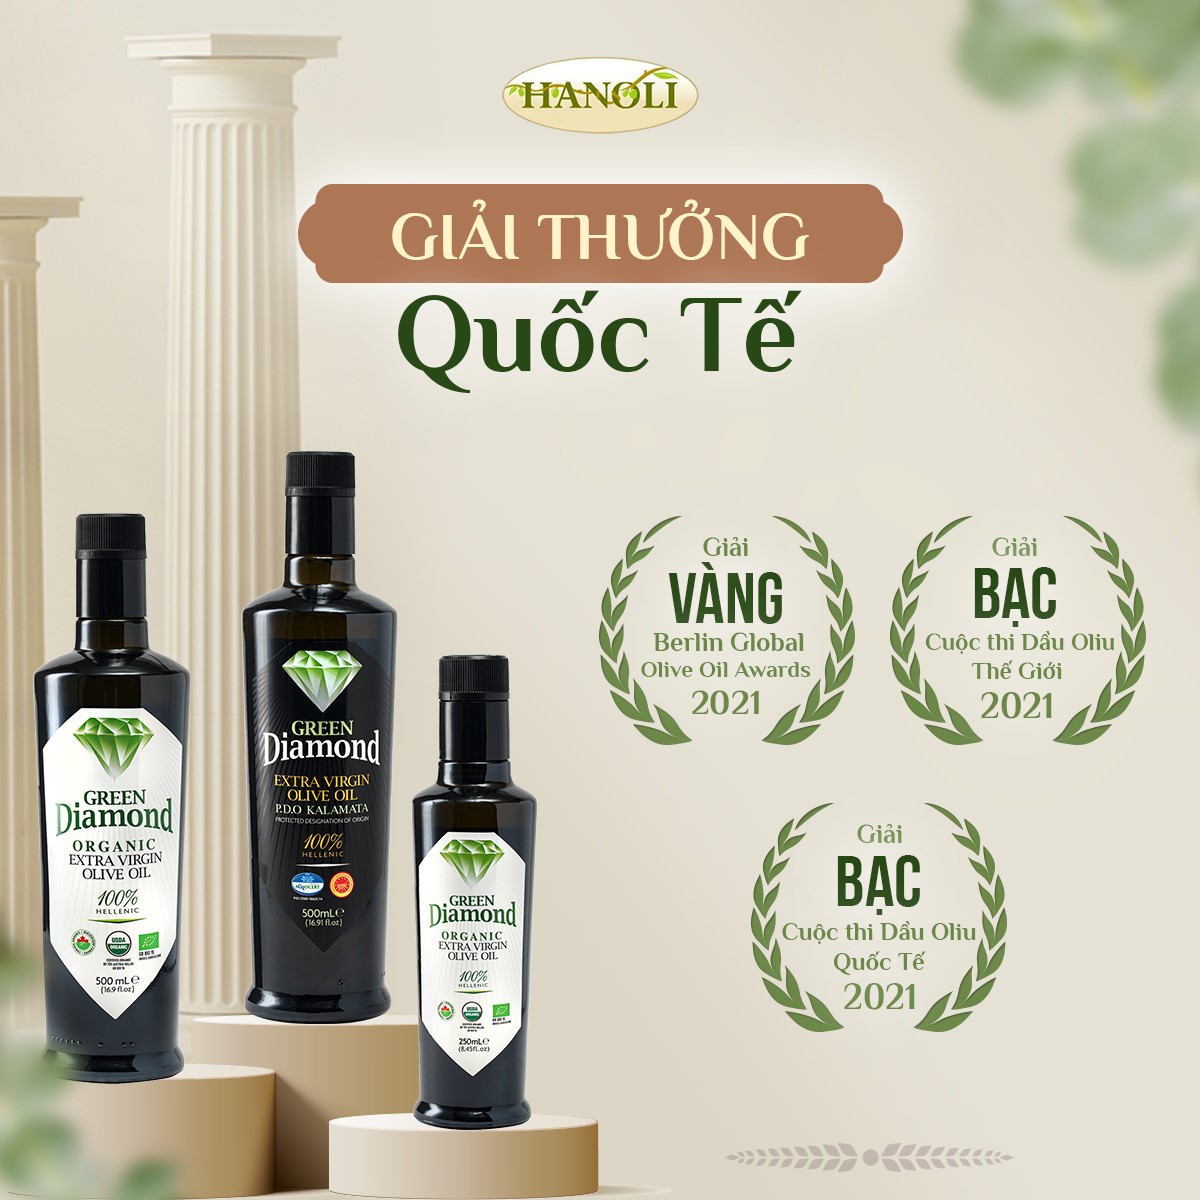 Lựa chọn dầu olive đạt chuẩn để nấu ăn và bảo vệ sức khỏe gia đình - Ảnh 5.